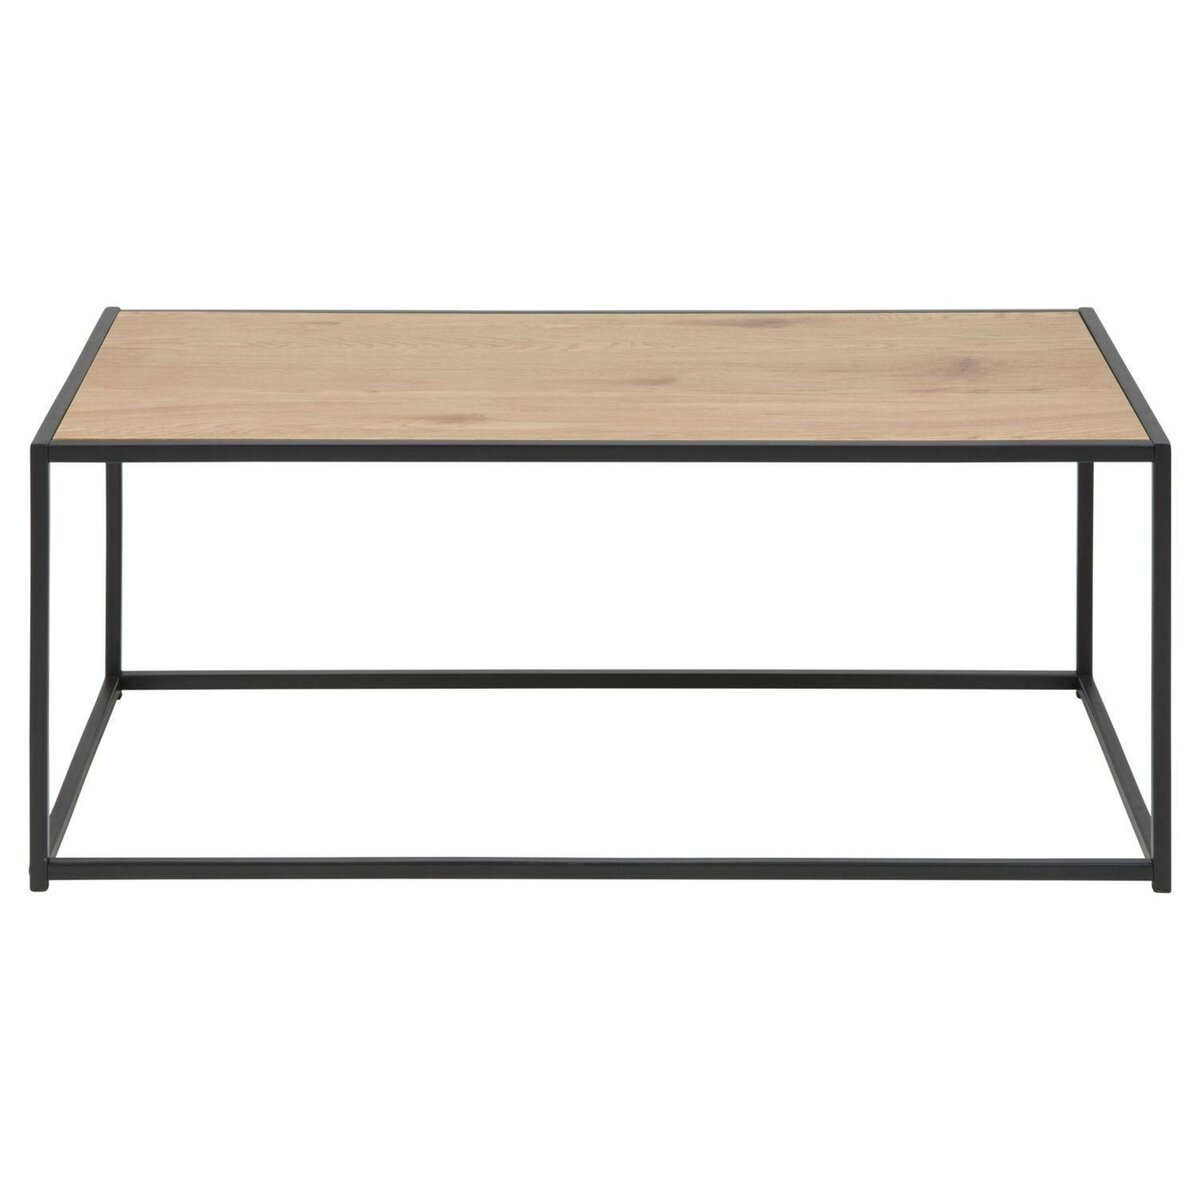 TOILINUX Table basse rectangulaire en MDF et métal - Noir et Beige